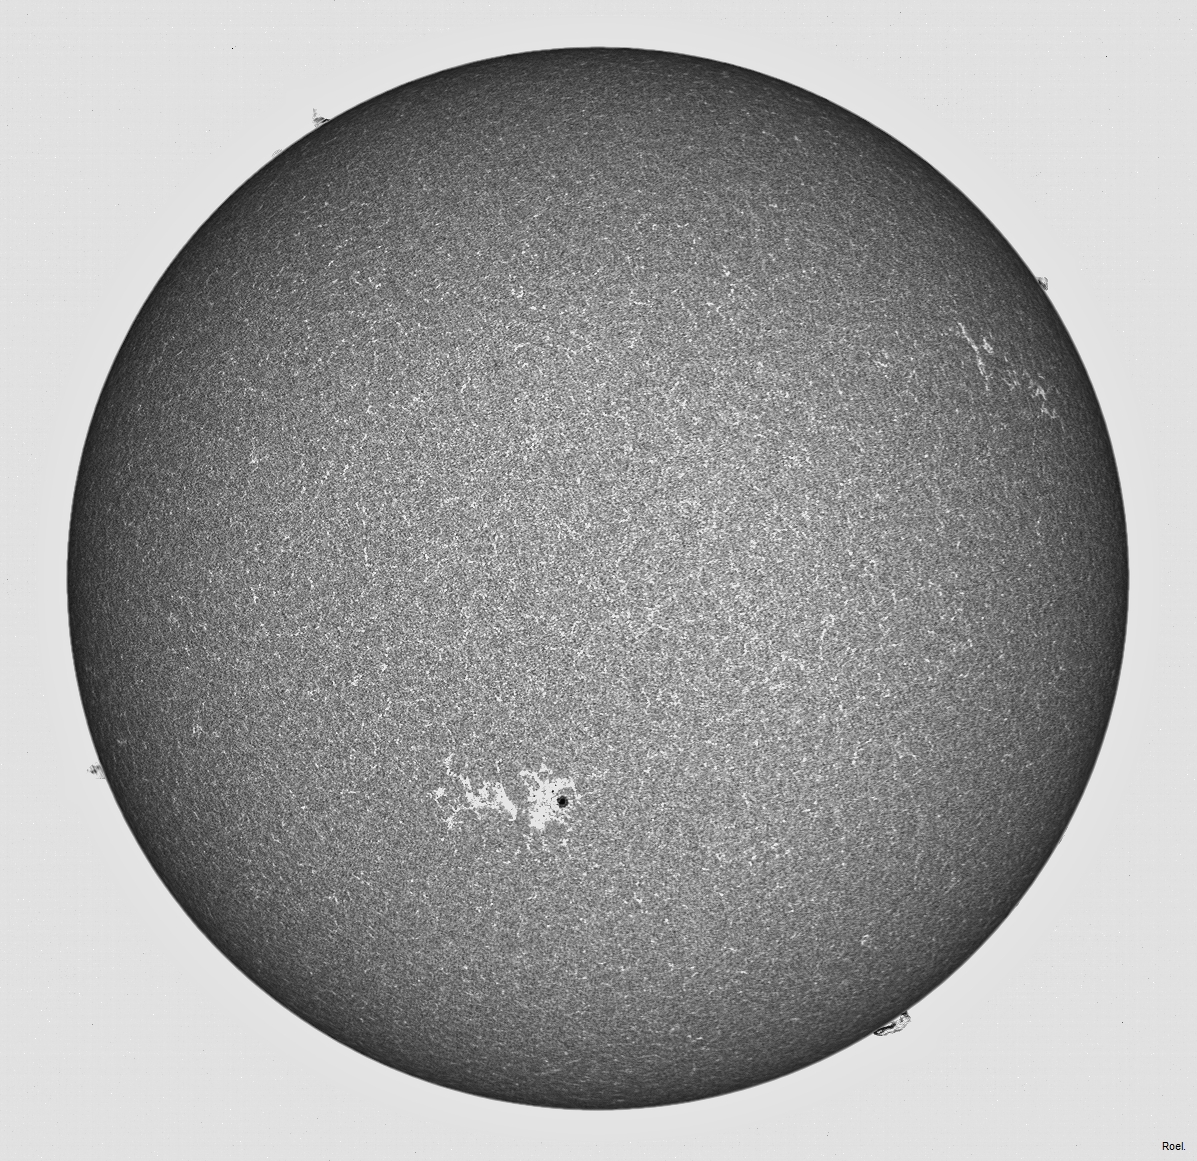 Sol del 9 de junio del 2020-Meade-CaK-PSTmod-1pos-neg.jpg